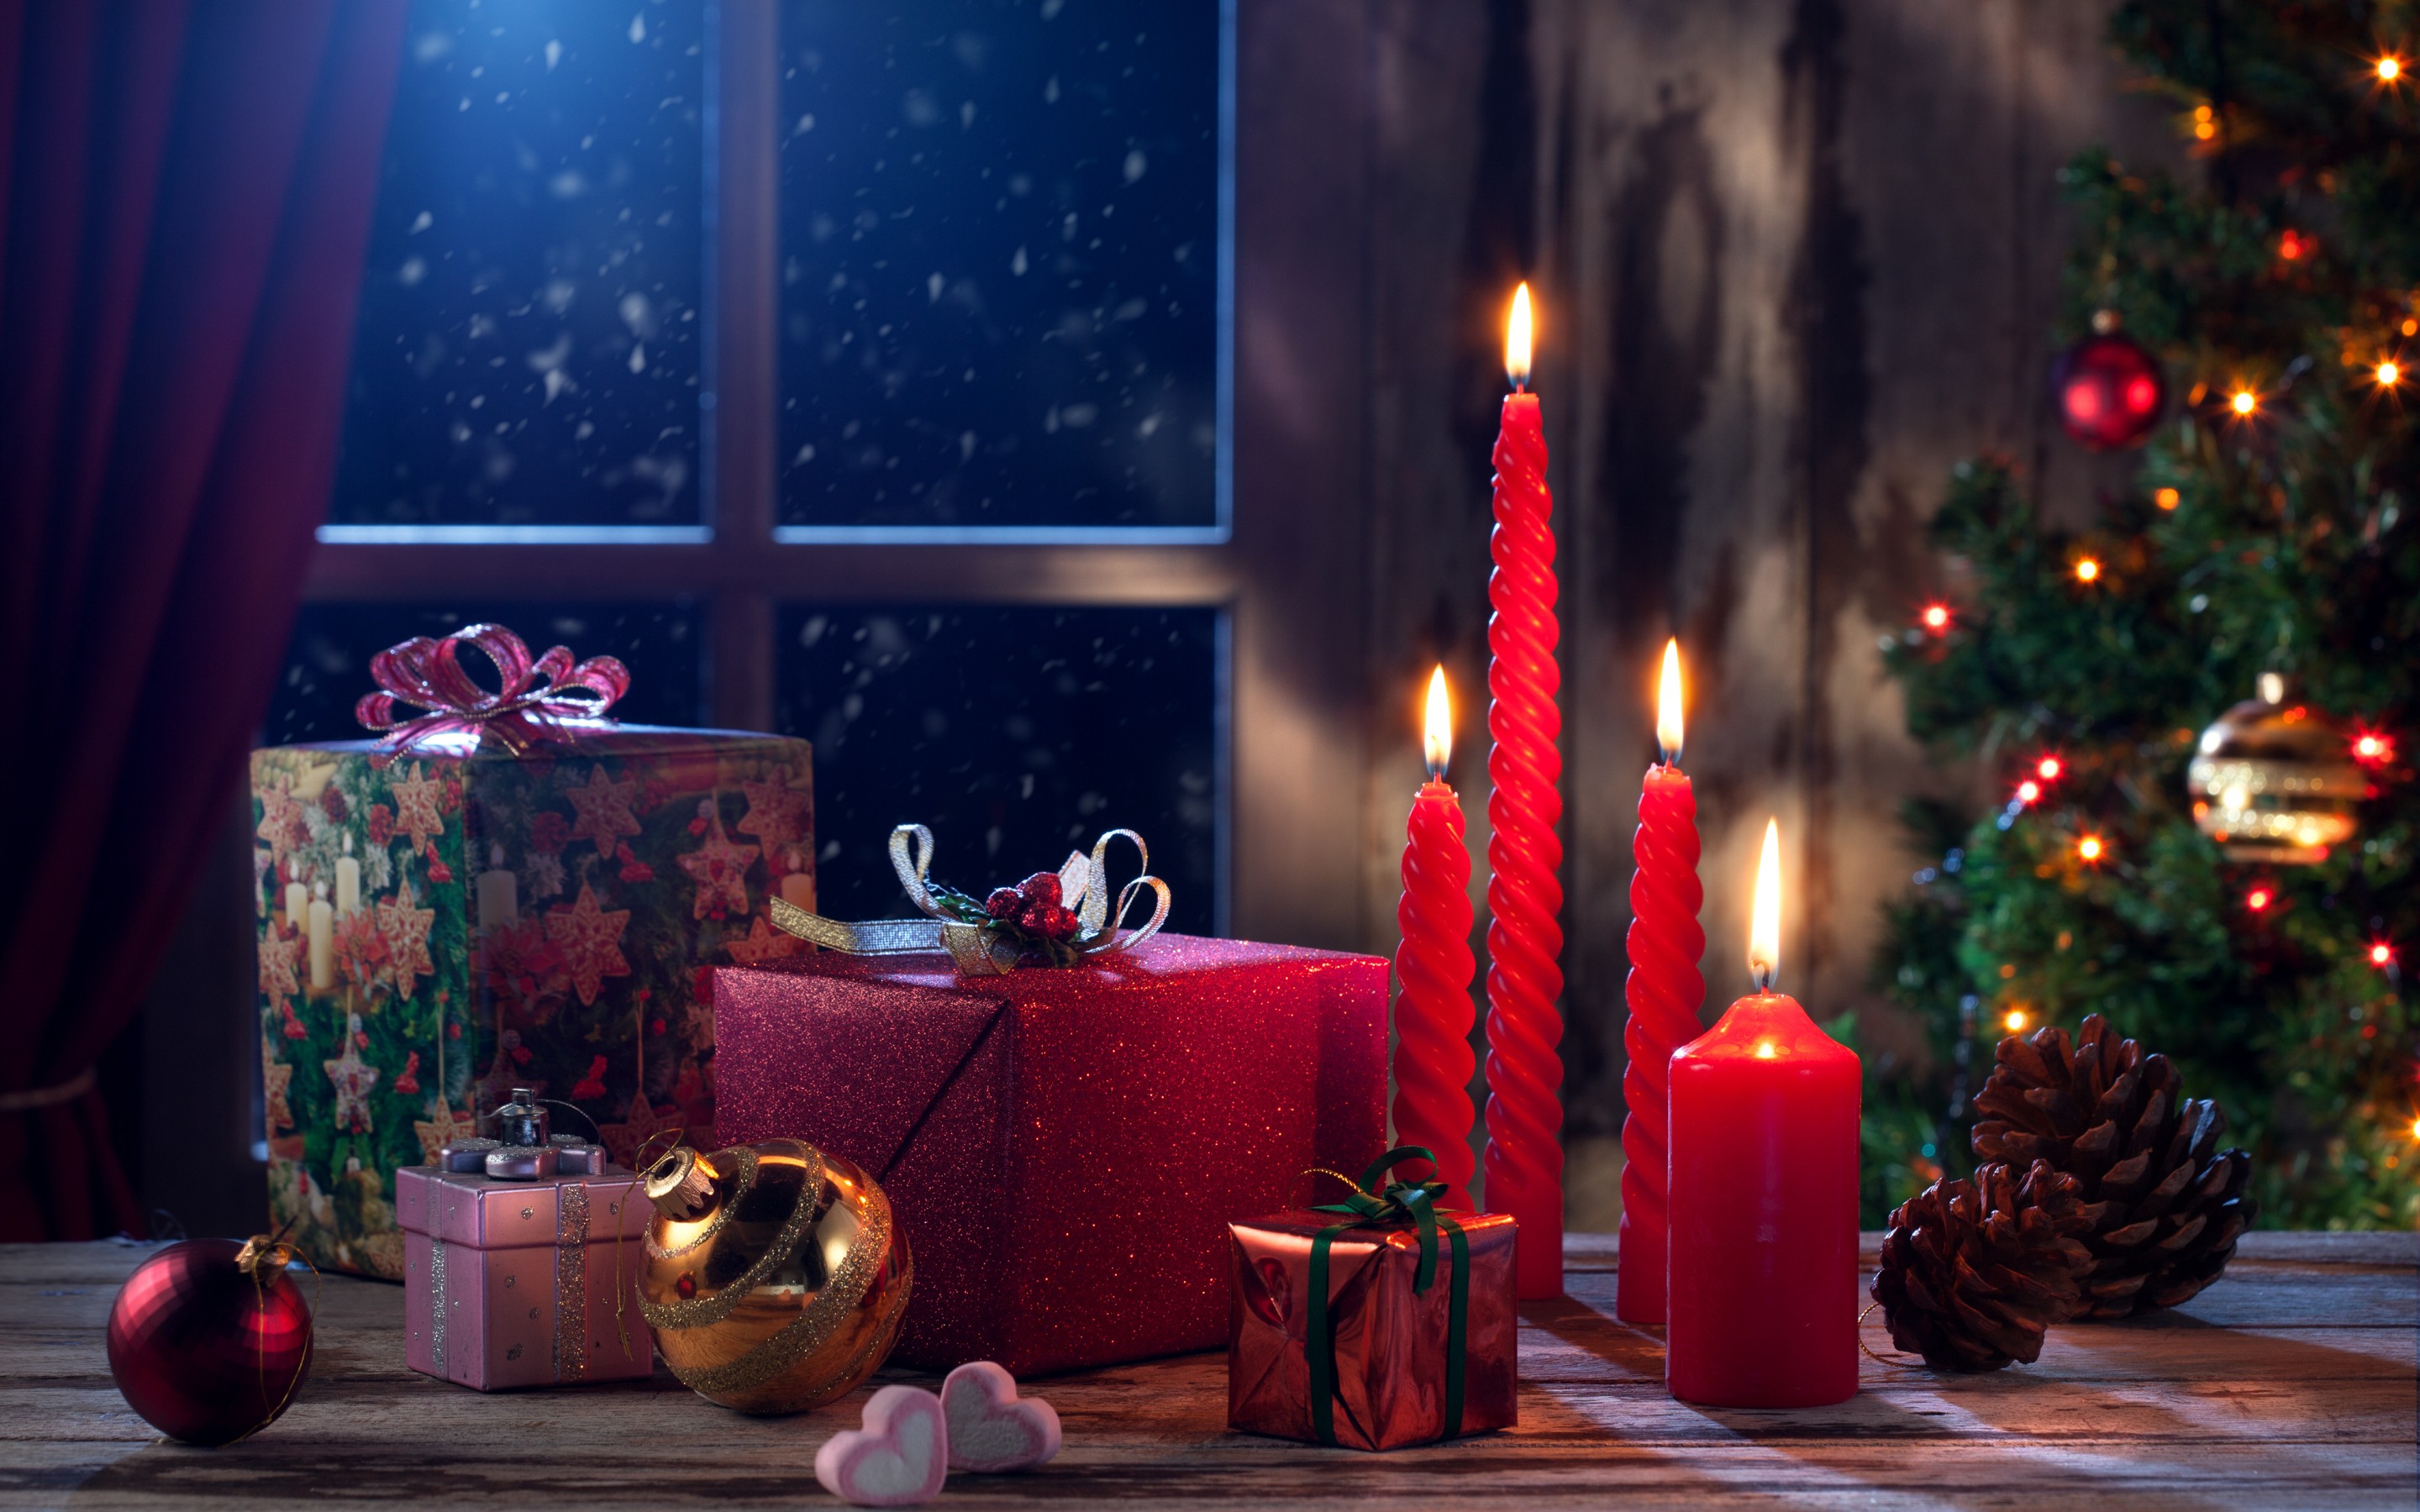 fondos de pantalla hd navidad,decoración navideña,navidad,nochebuena,encendiendo,decoración navideña